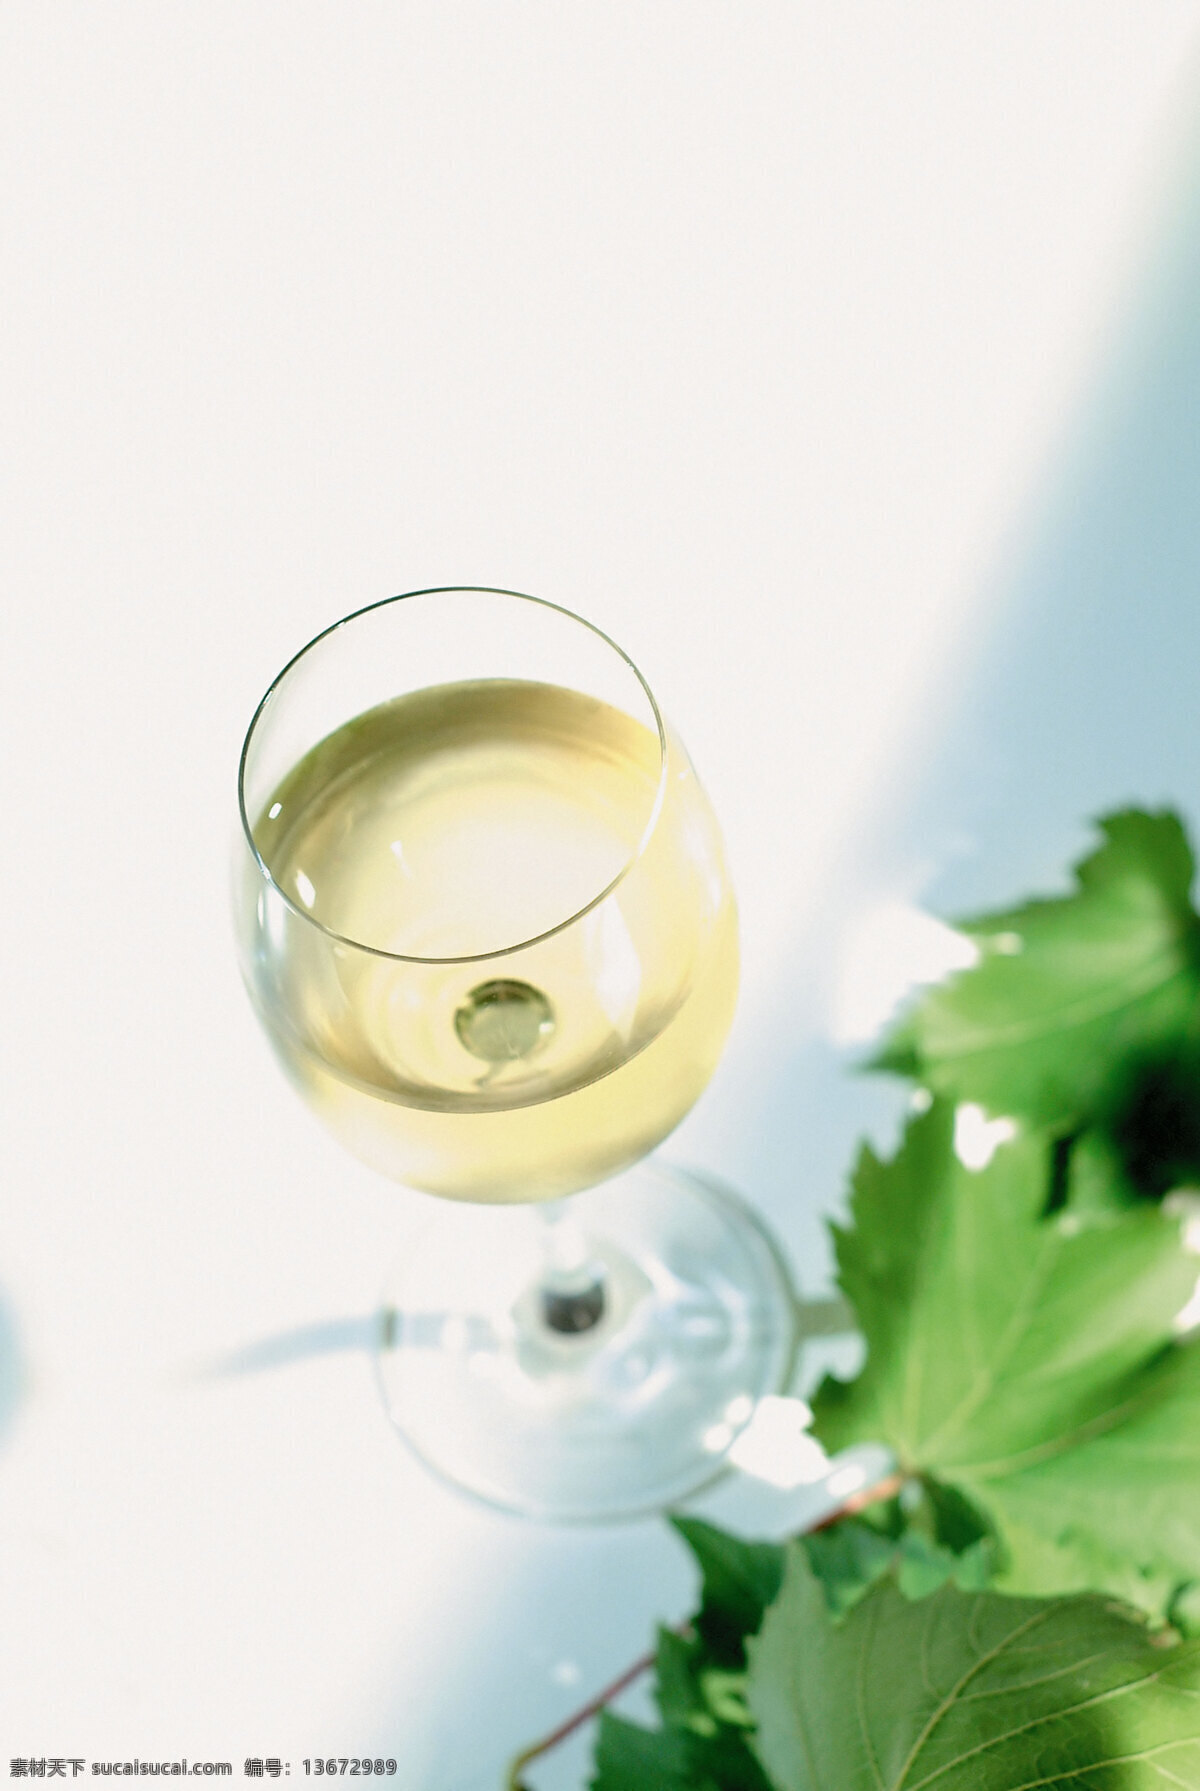 葡萄 叶 旁 一杯 葡萄酒 高清图片 竖构图 酒 酒水 金黄色 浅金黄色 玻璃杯 高脚 酒杯 装满酒的 葡萄叶 绿色葡萄叶 酒类图片 餐饮美食